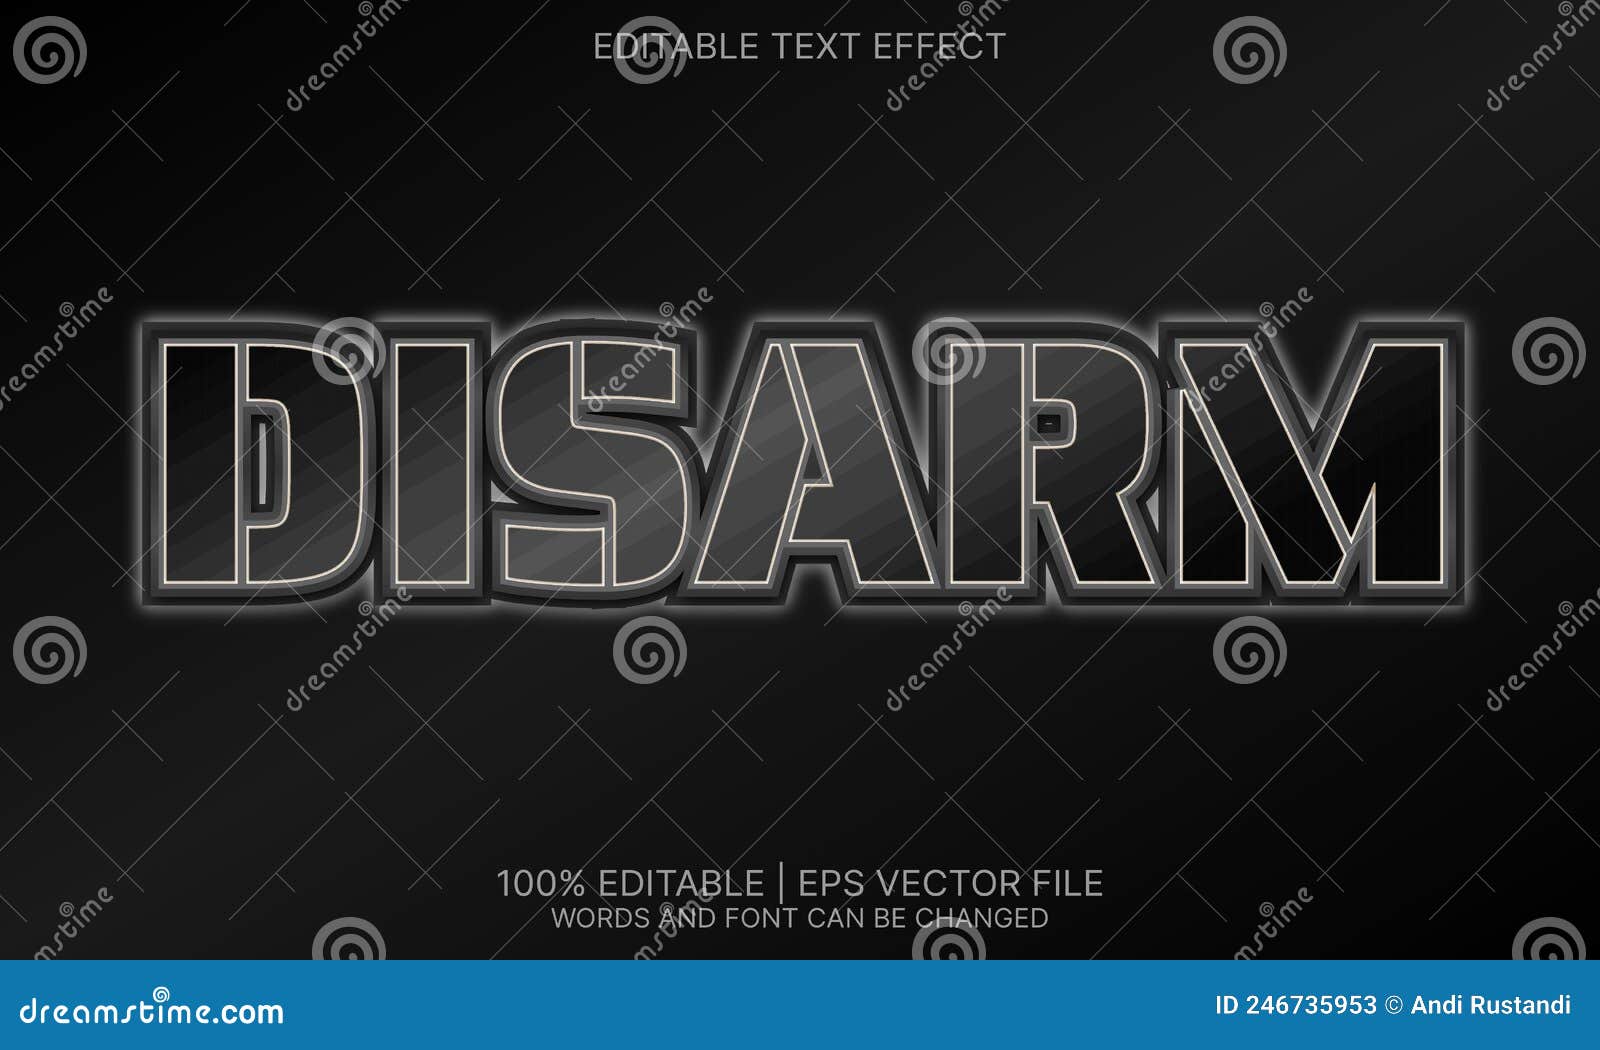 disarm editable text effect style